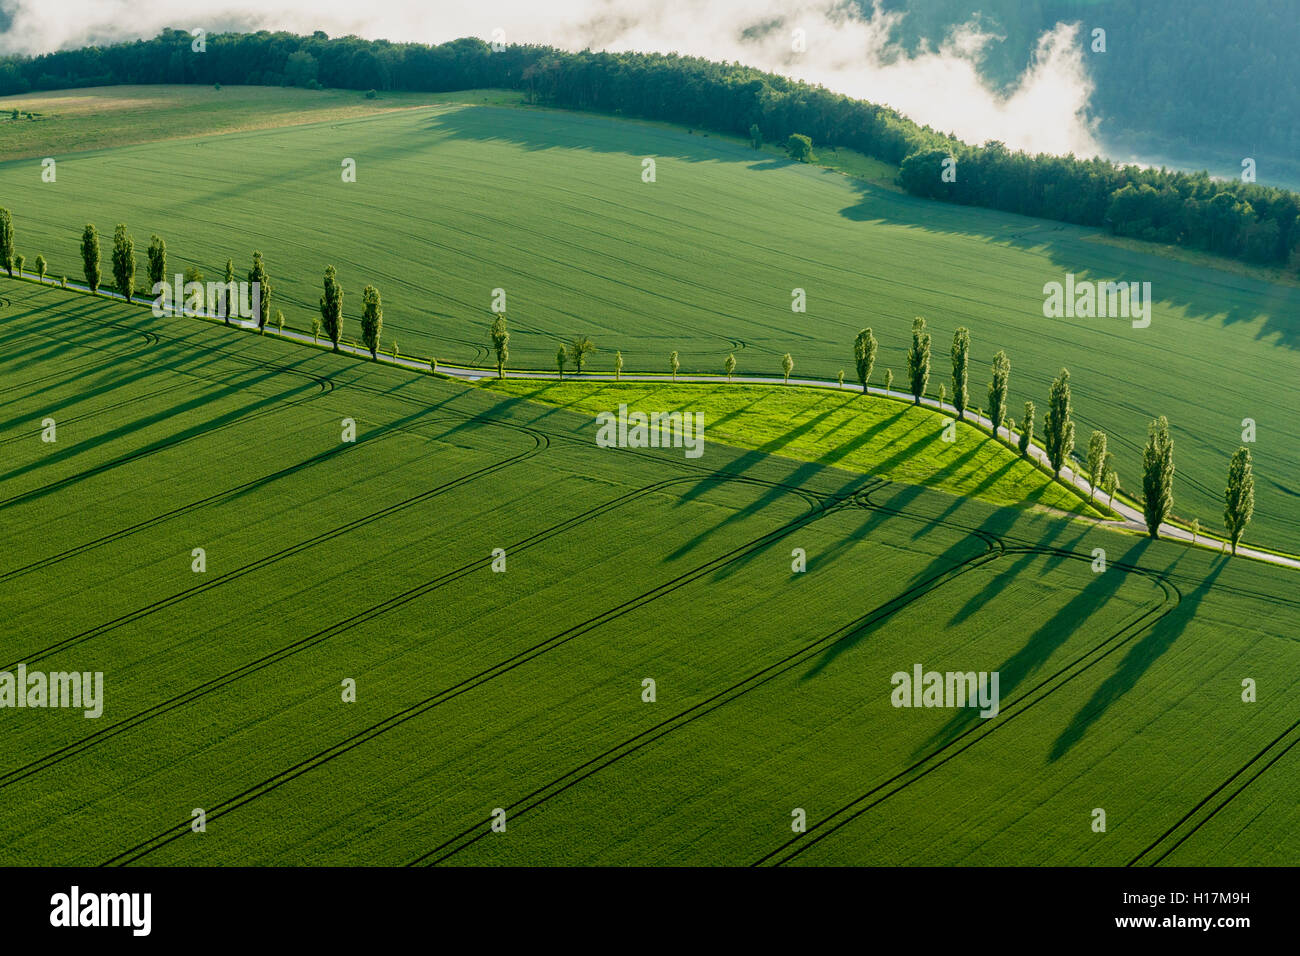 Eine Reihe von Pappeln (Populus) ist die Erstellung lange Schatten auf ein grünes Feld, Königstein, Sachsen, Deutschland Stockfoto